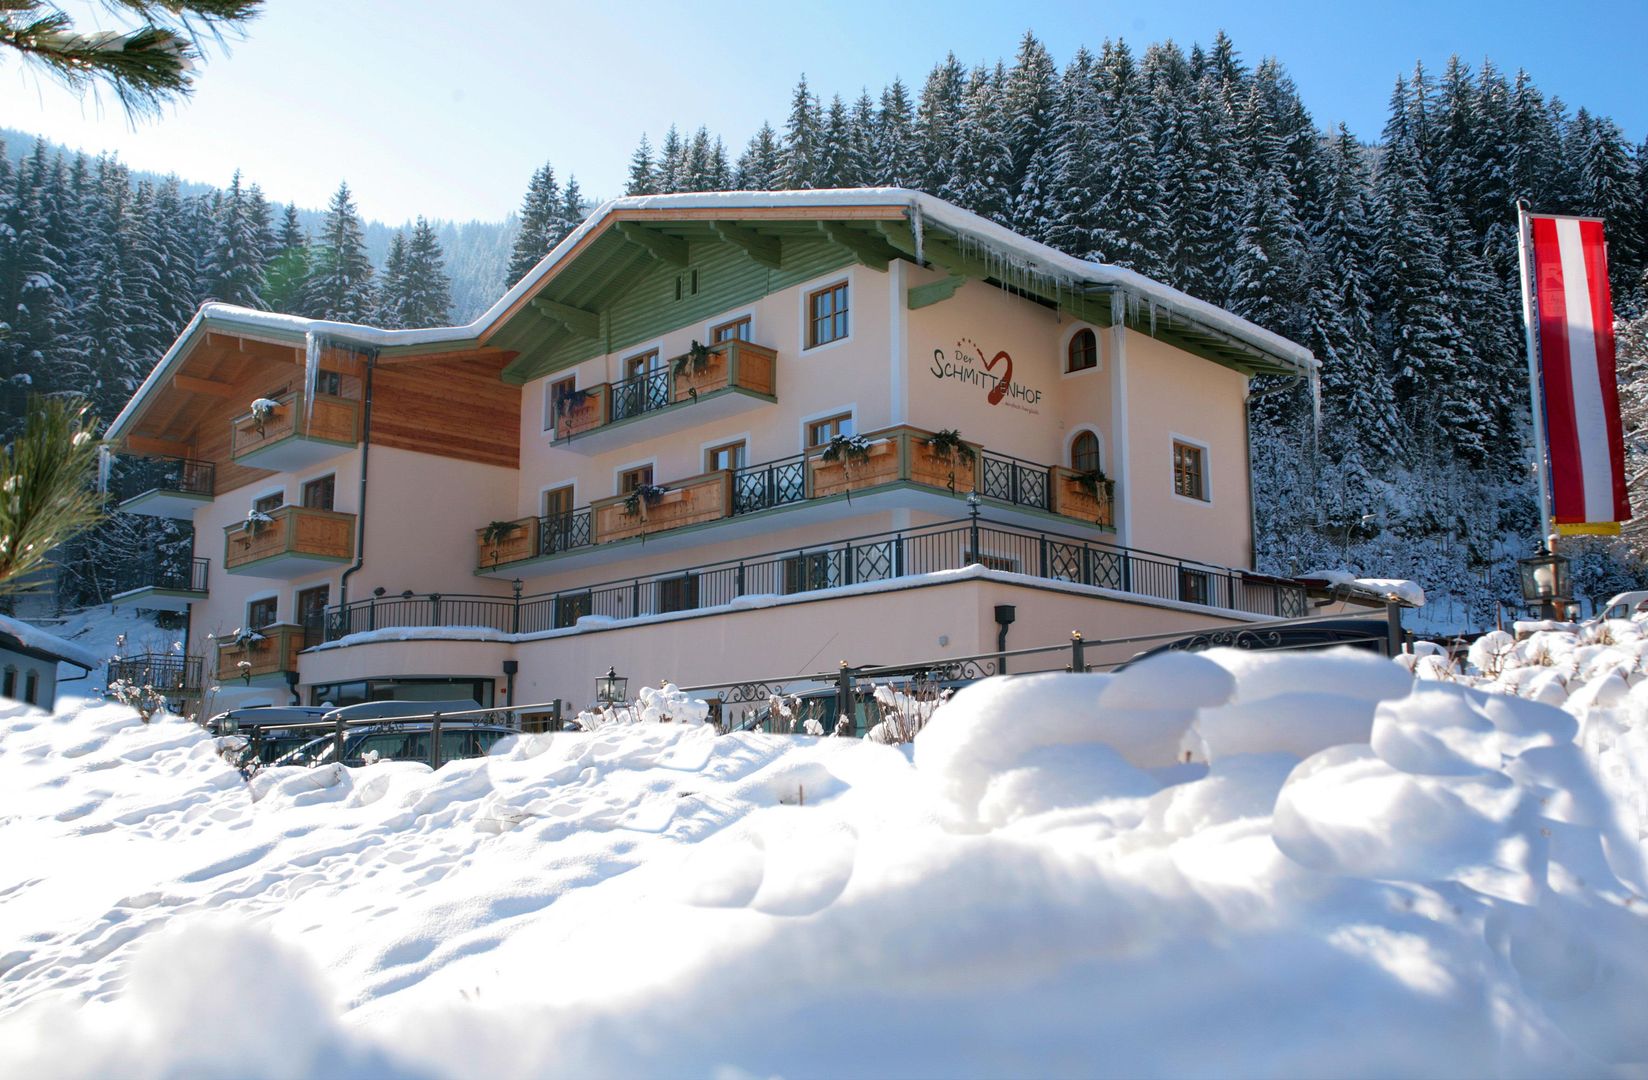 Meer info over Hotel Der Schmittenhof  bij Wintertrex